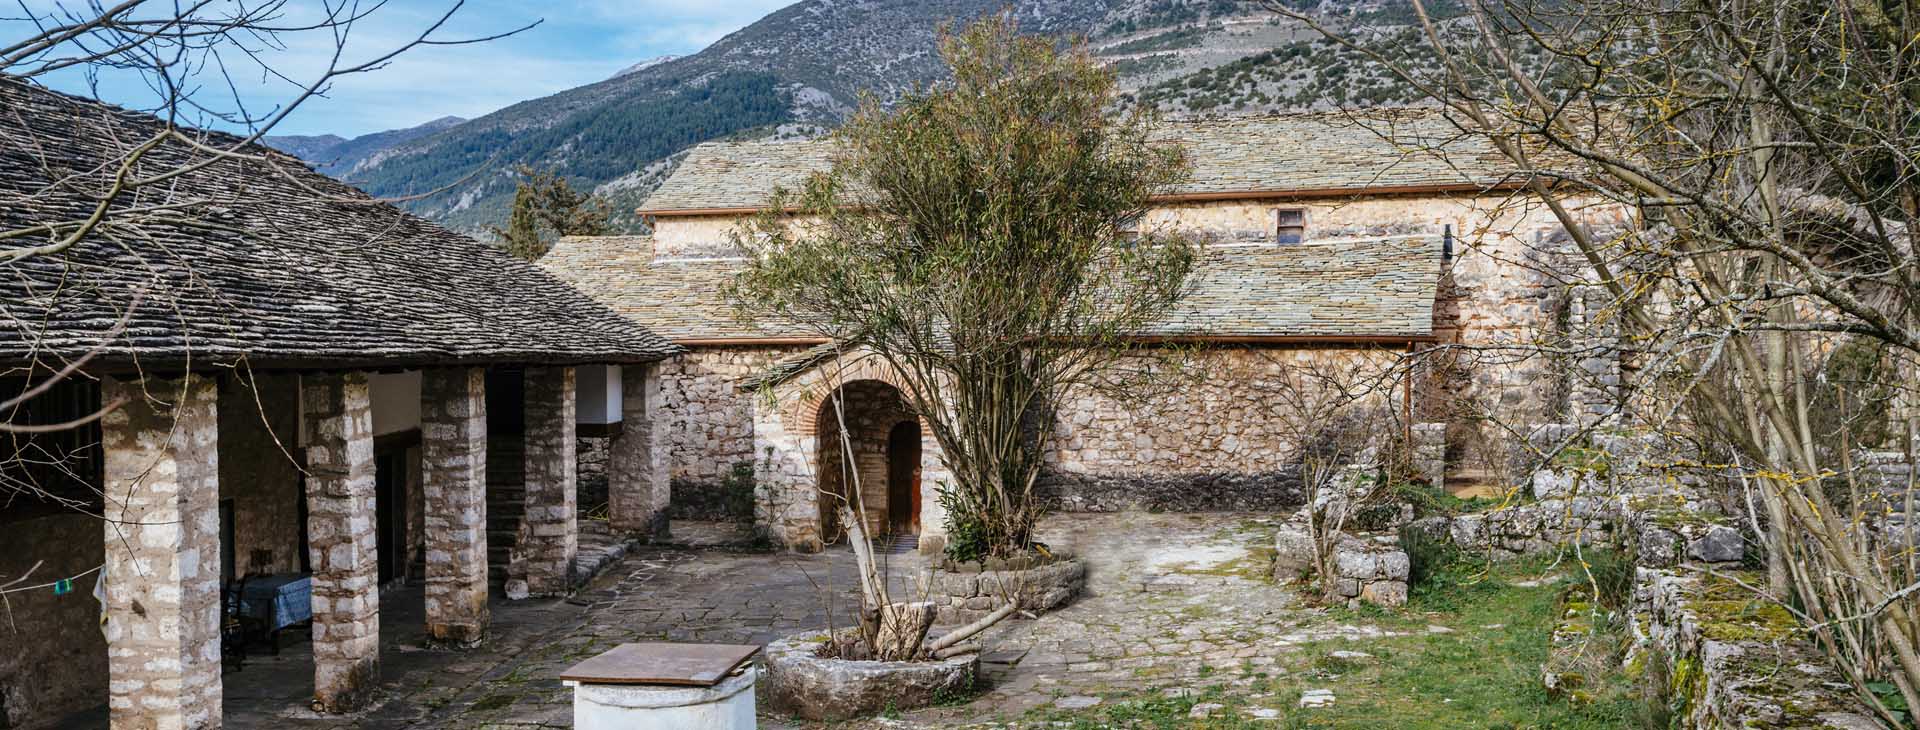 Monastery of Philanthropenoi on the island of Ioannina